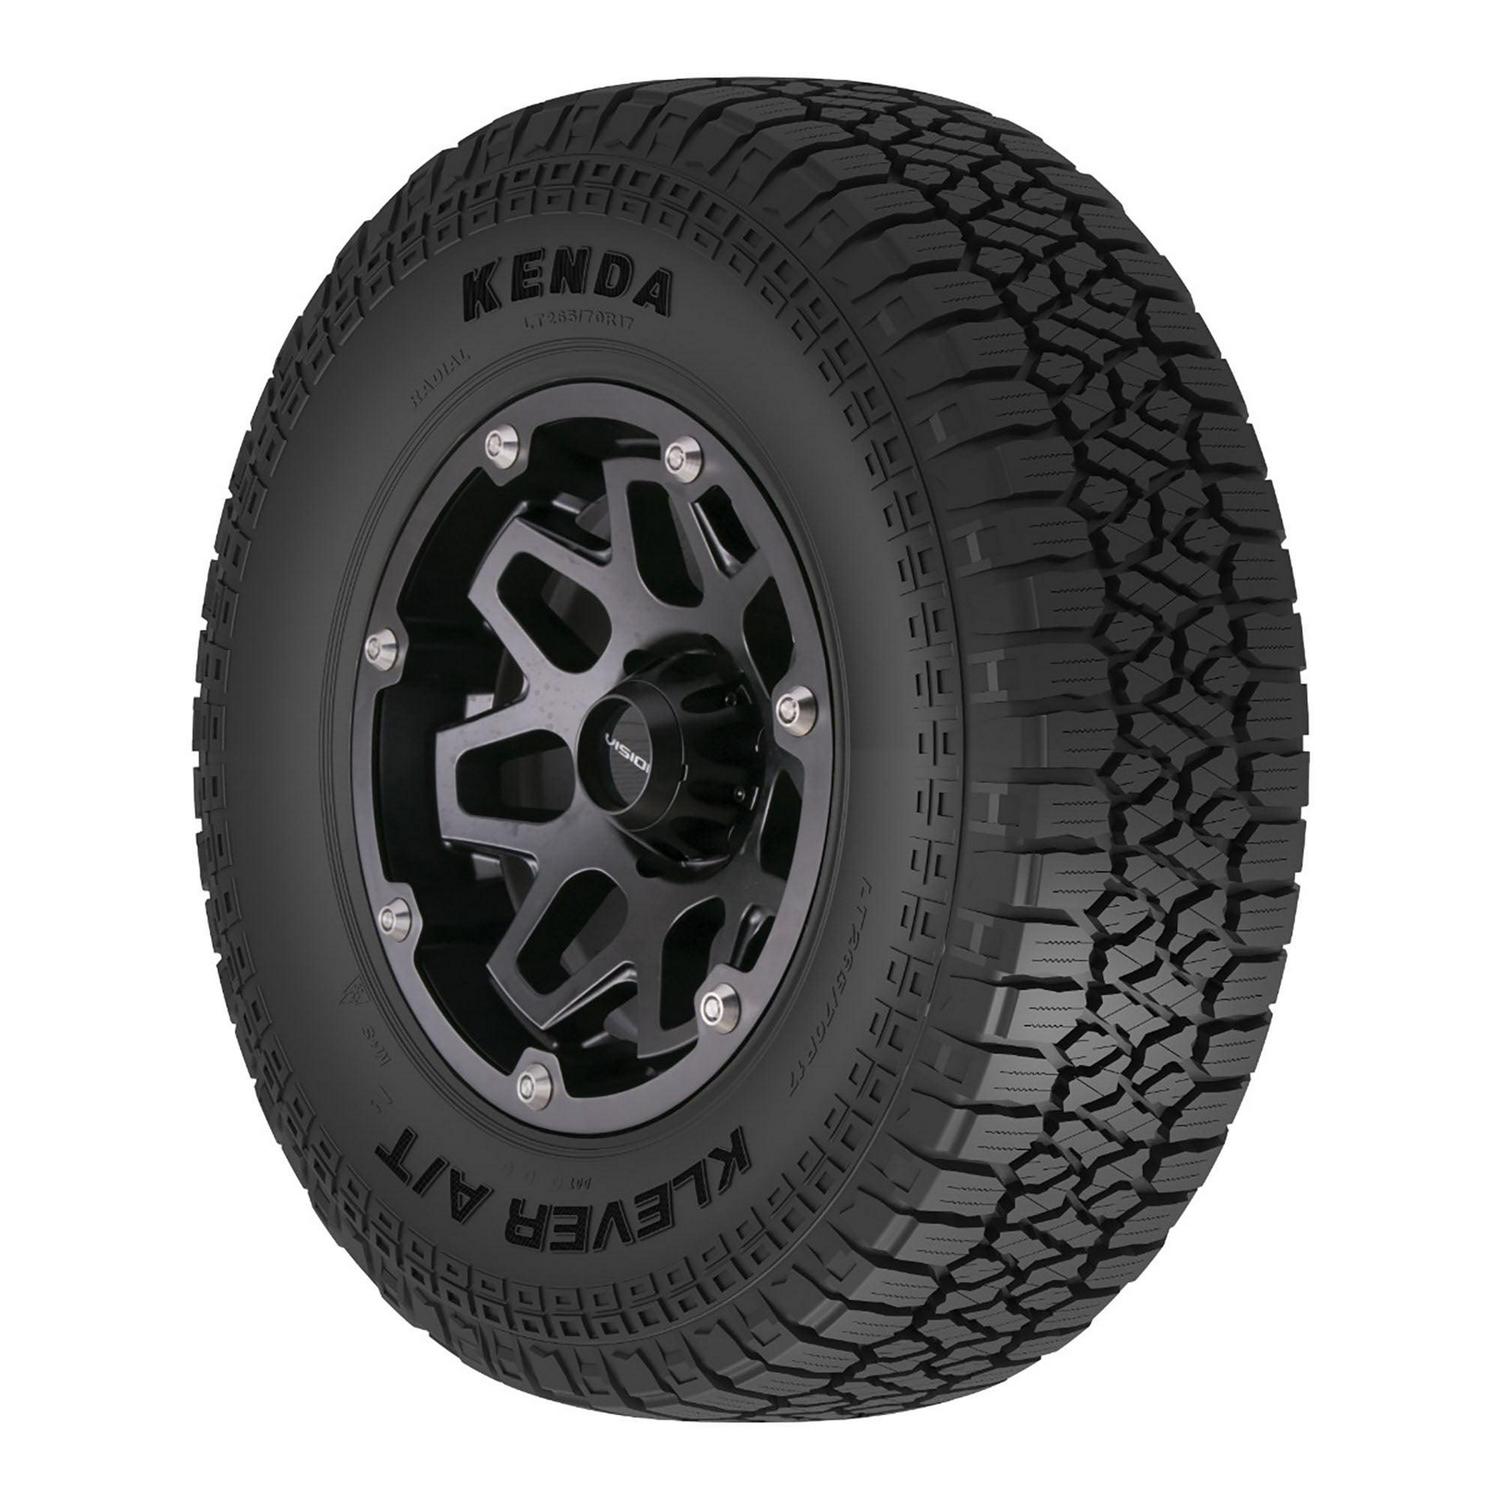 Kenda Klever A/T2 KR628 All Terrain 265/65R17 116T XL Light Truck Tire